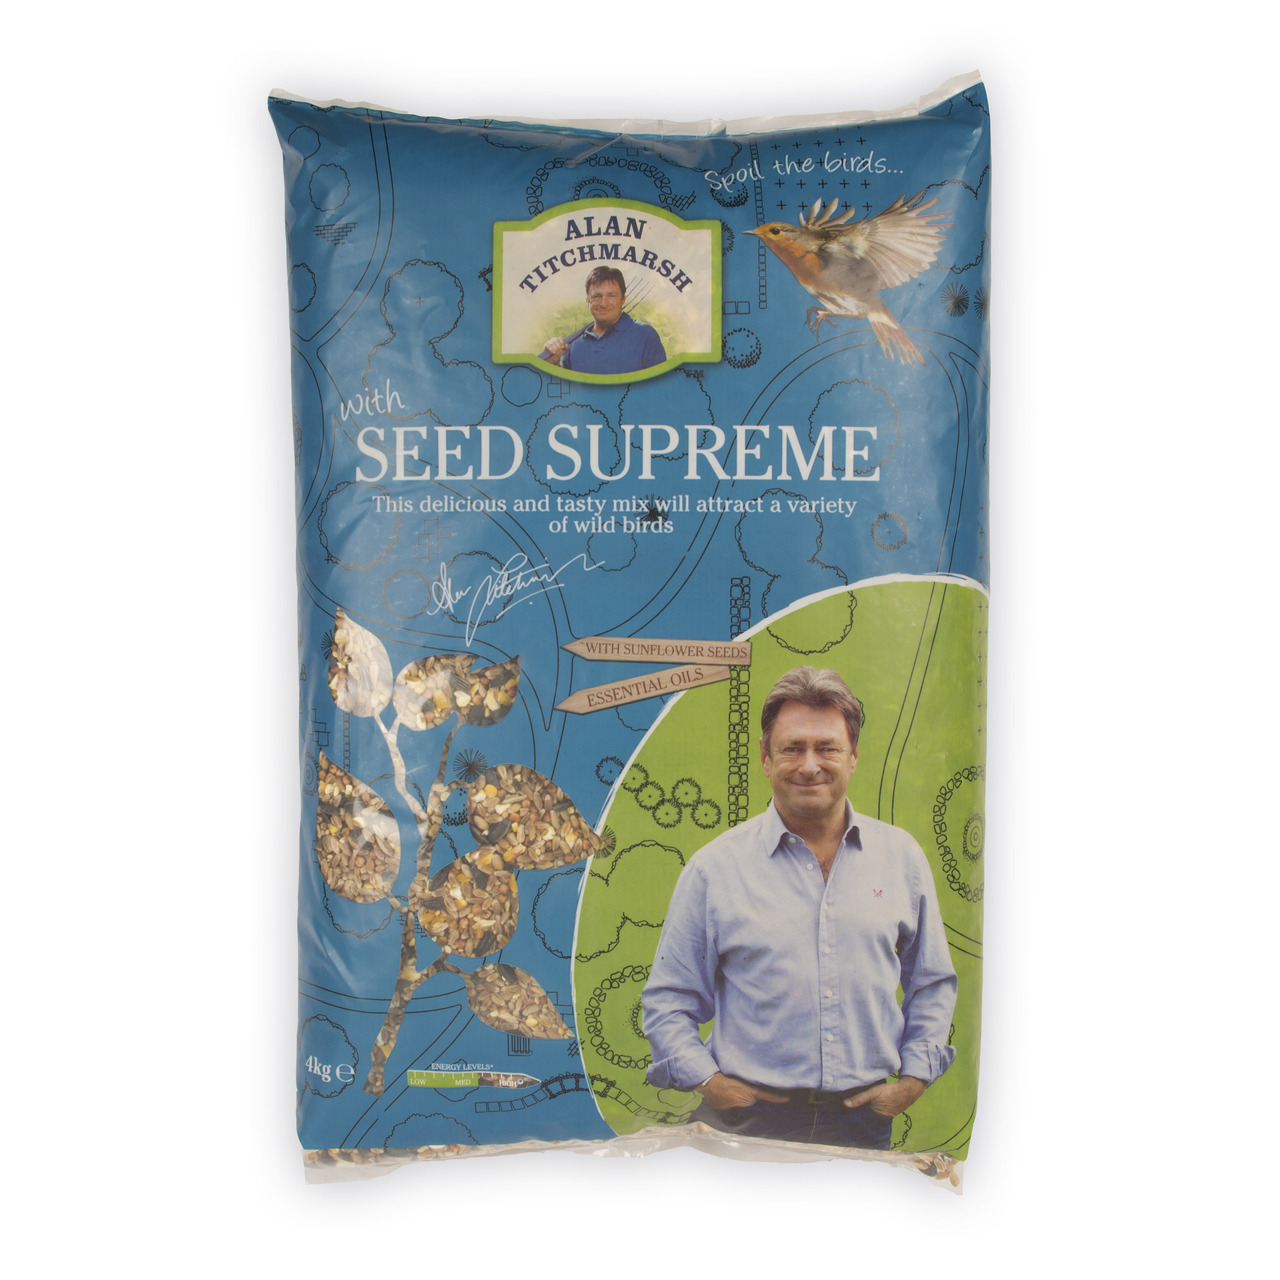 An image of Alan Titchmarsh Seed Supreme Mix